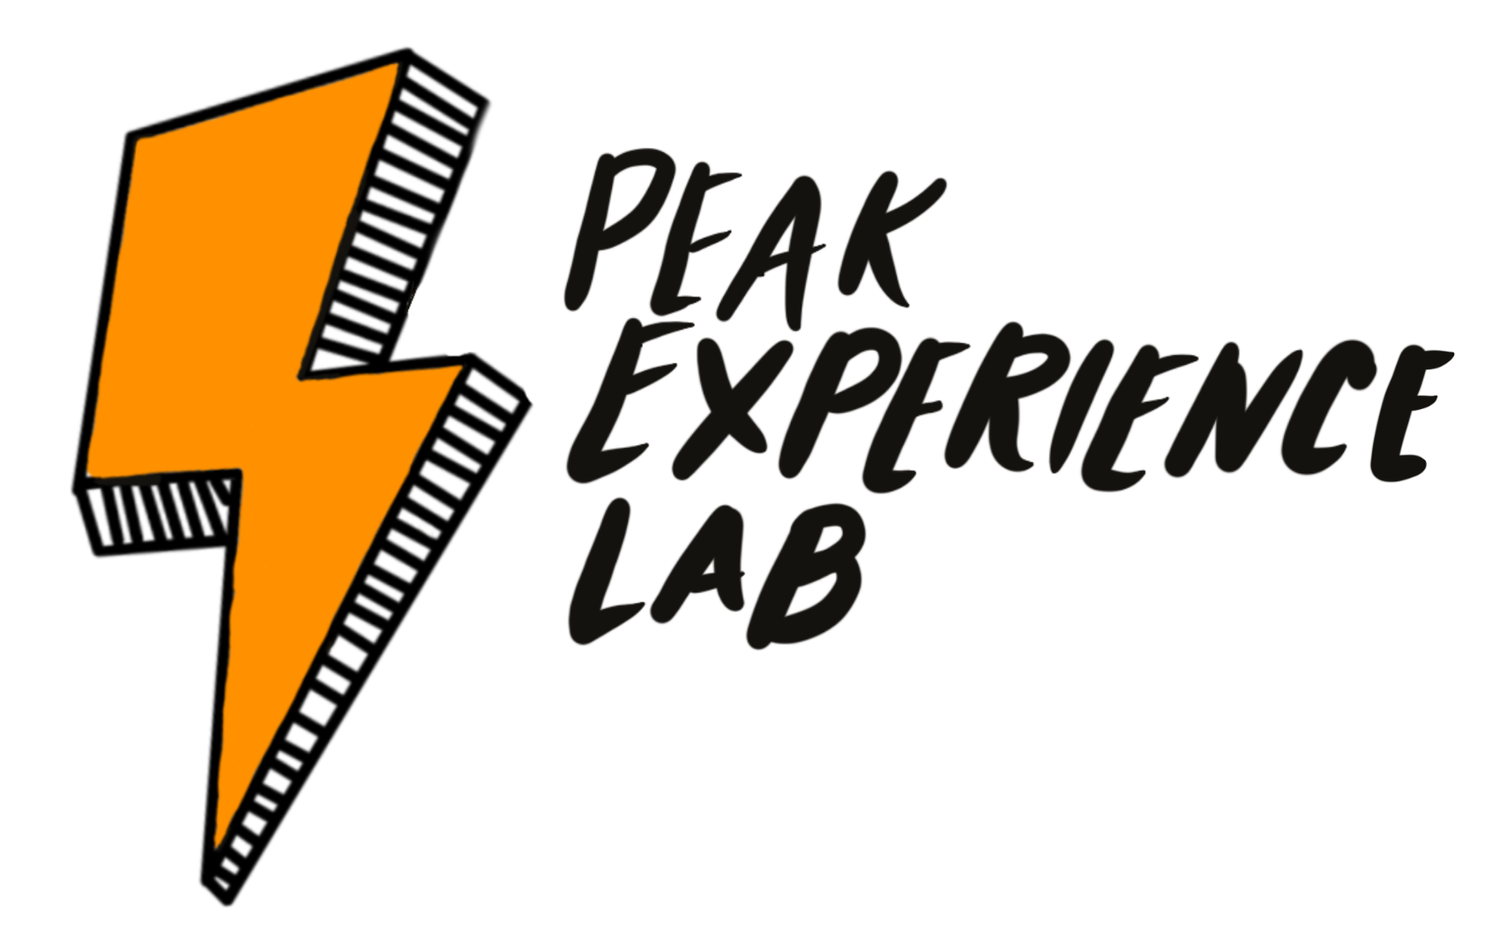 Peak Experience Lab